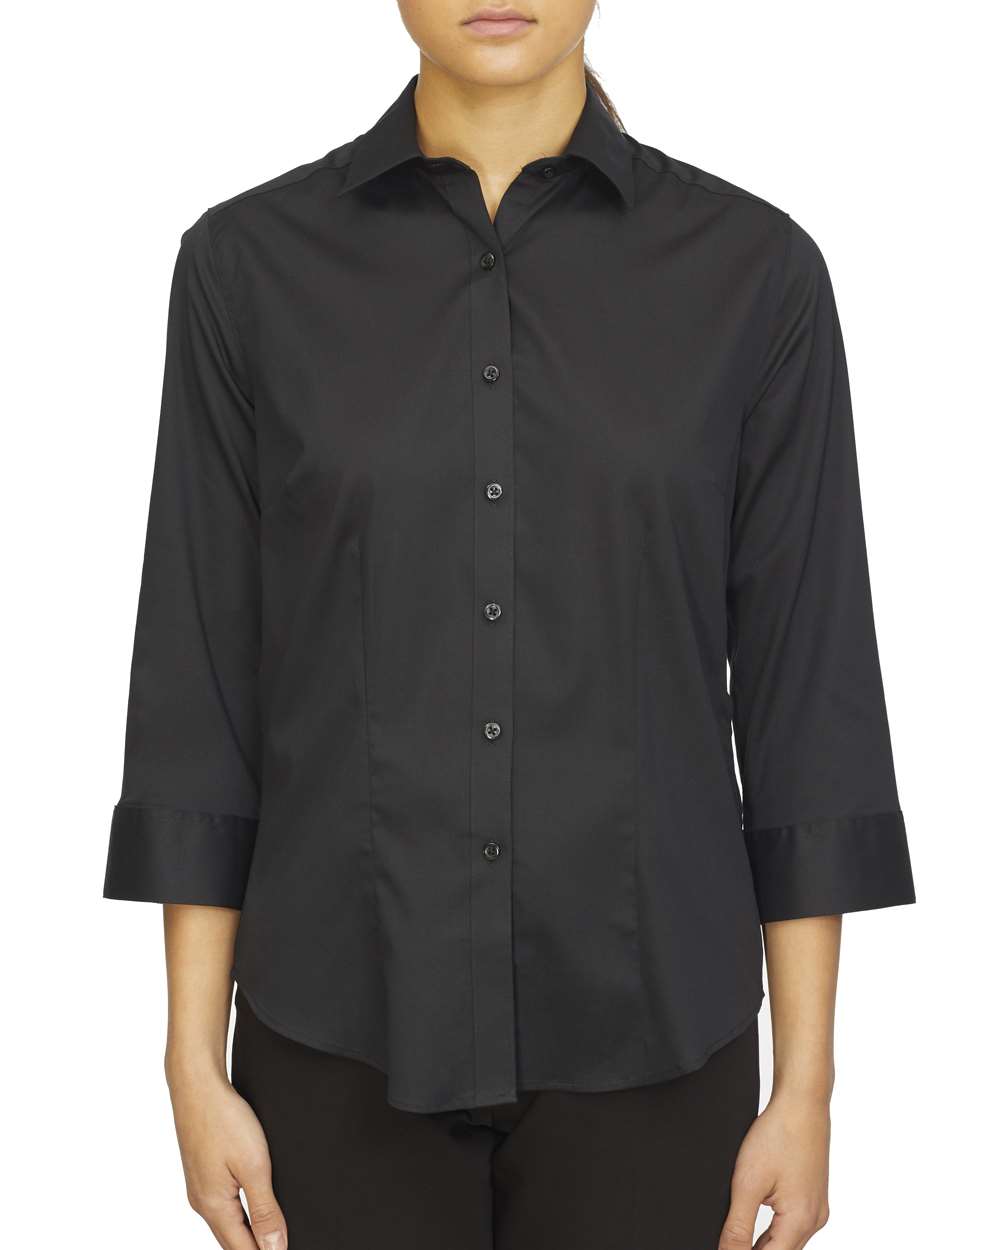 Van Heusen Women's 3/4 Sleeve Shirt